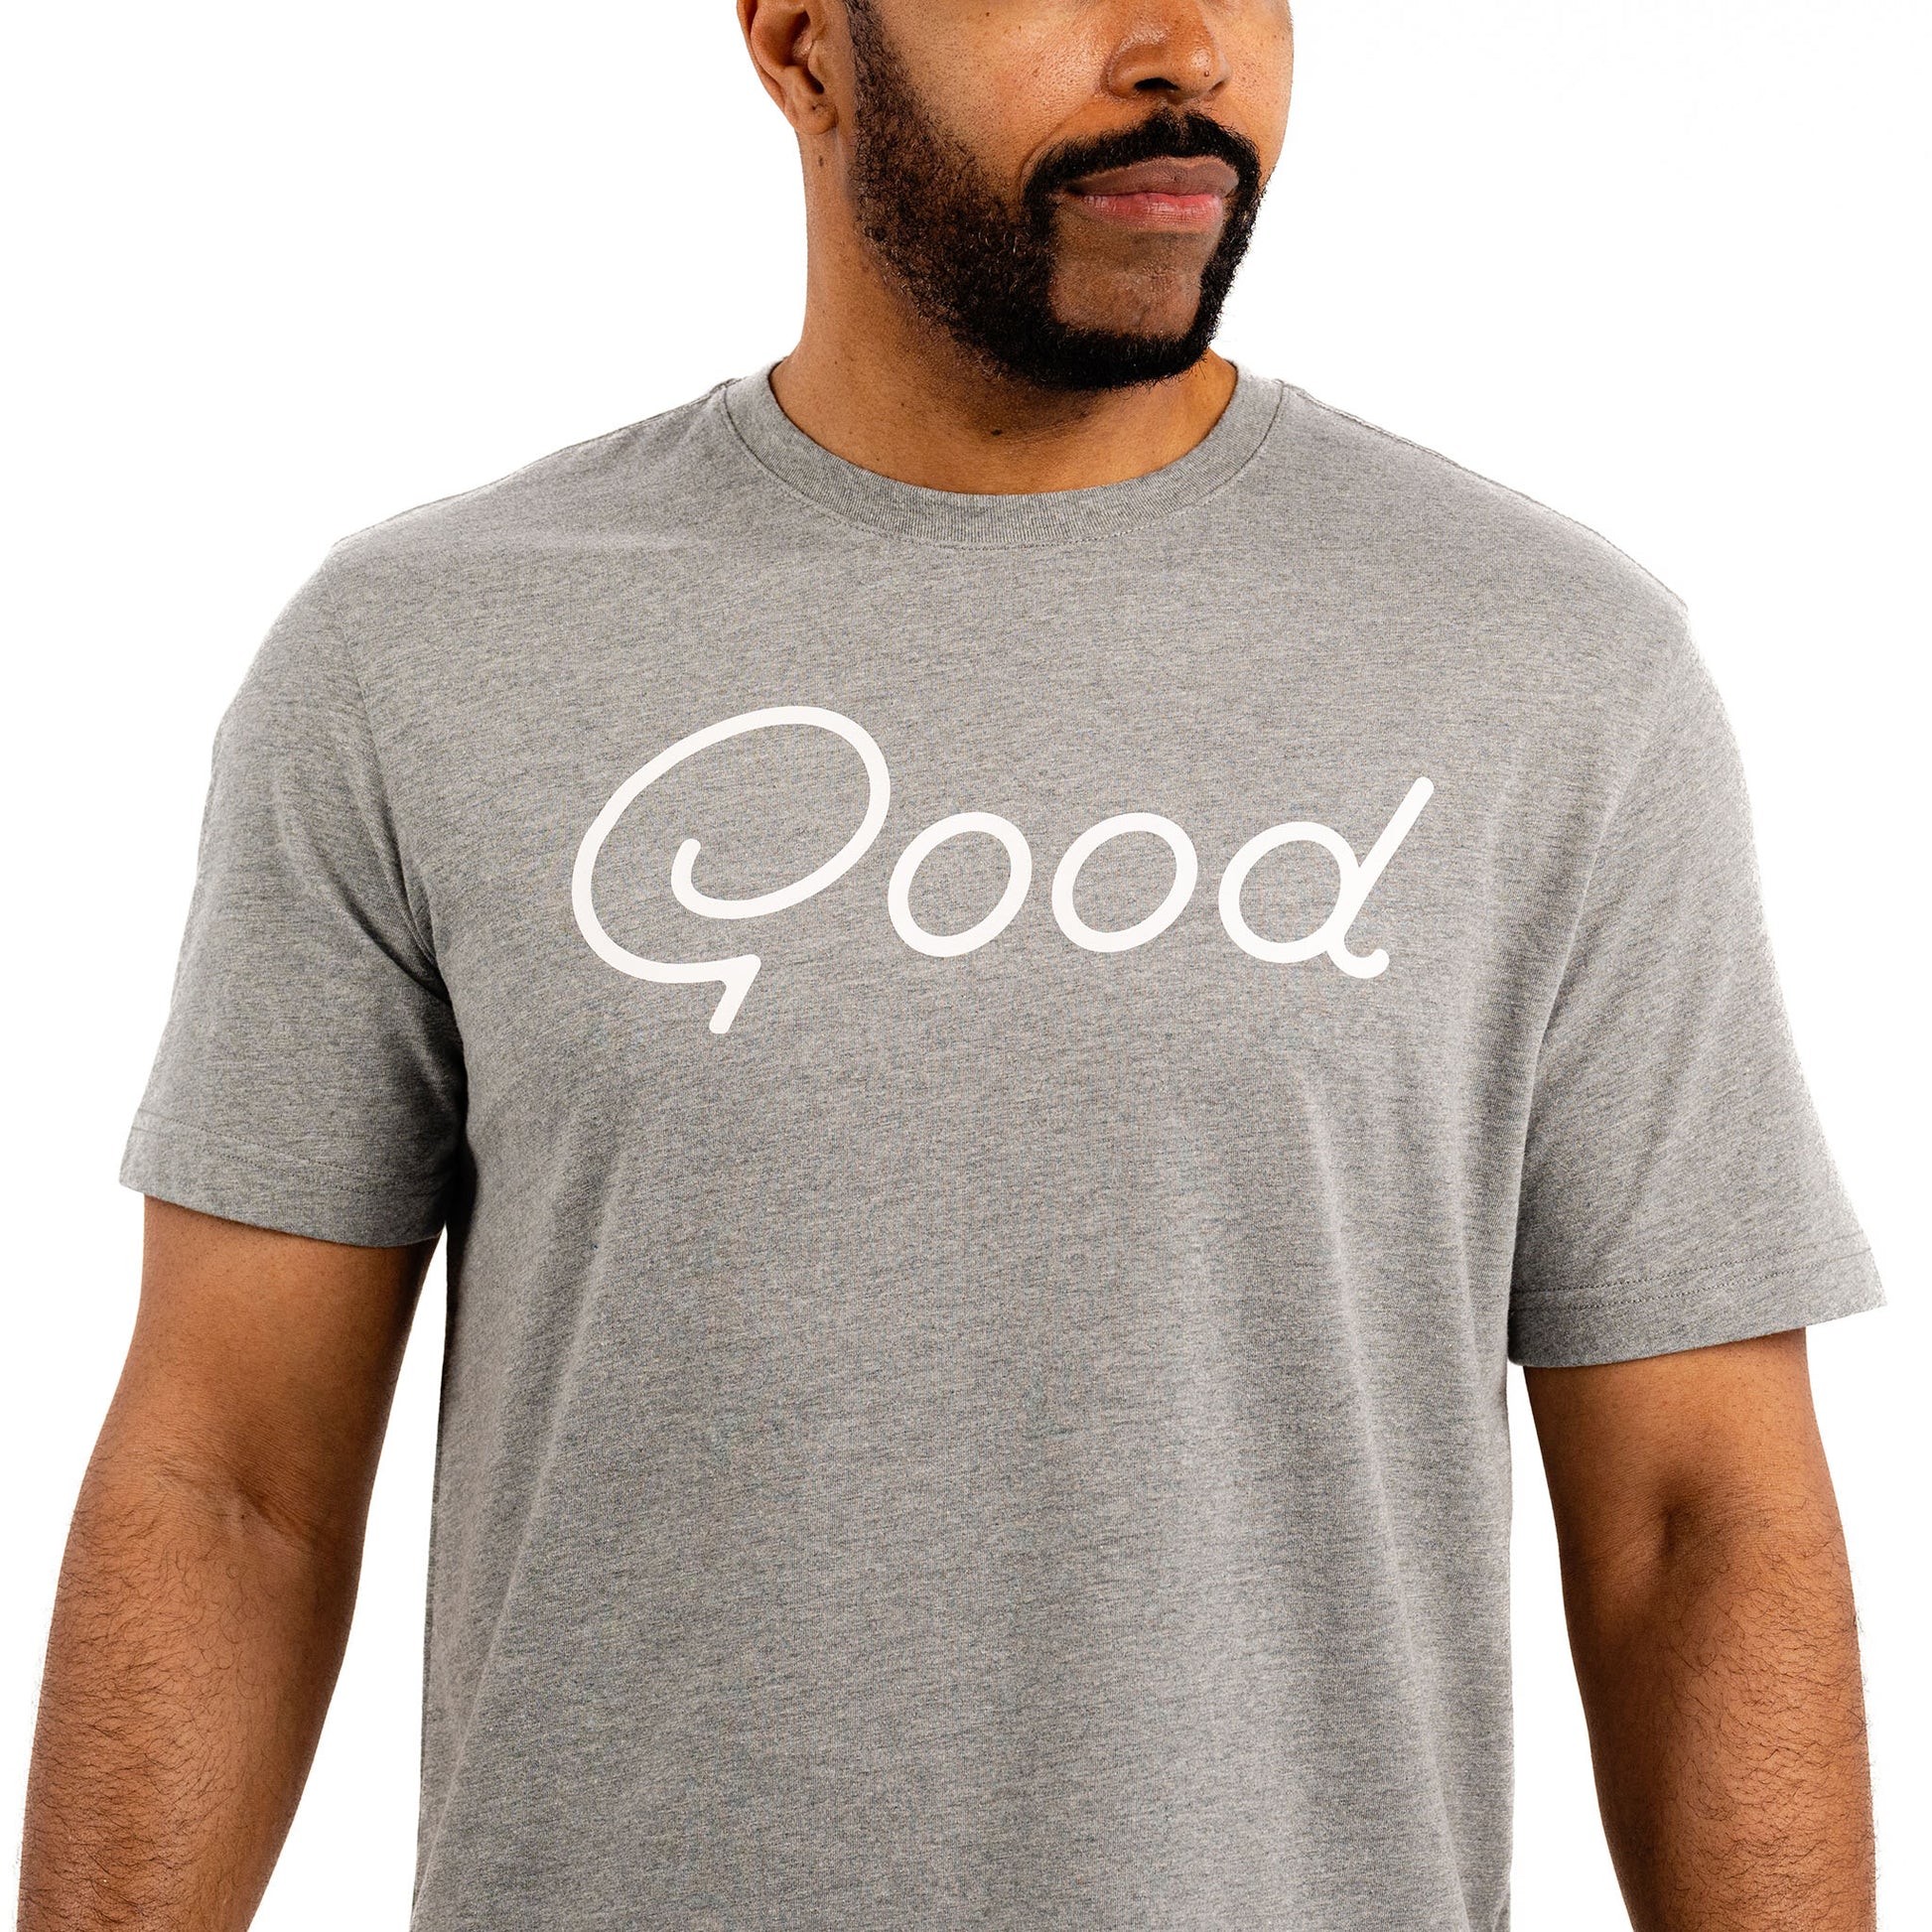 Good Grey T-Shirt- Ultra Soft men's T-Shirt From Good Good Golf